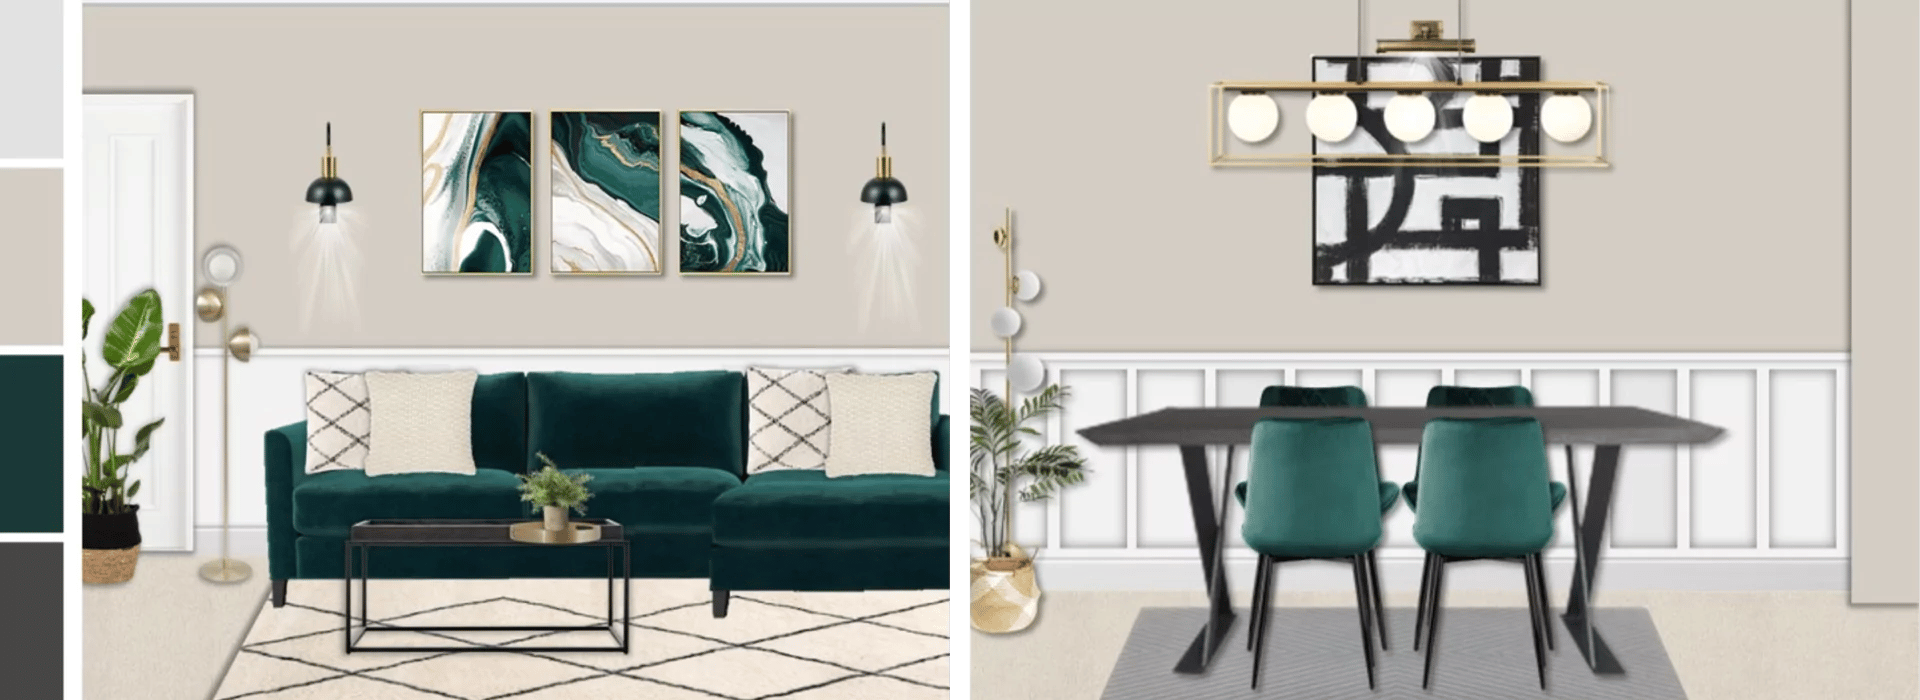 teal living-dining room design